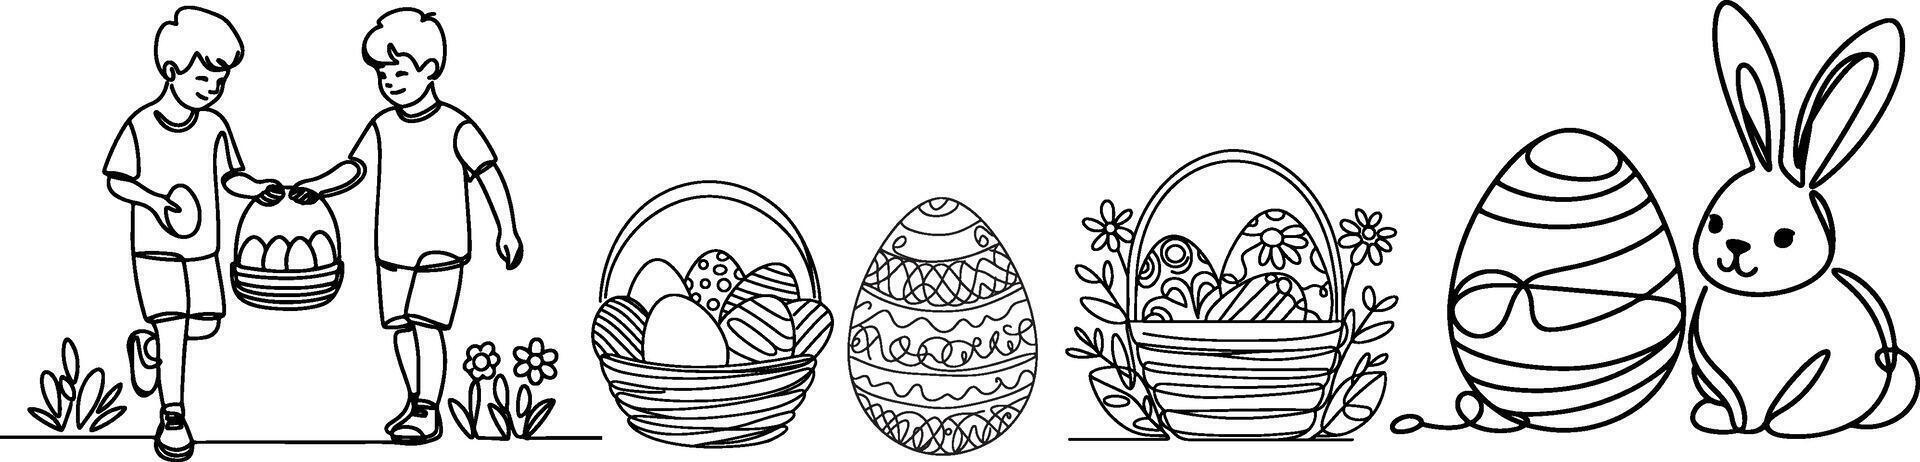 1 contínuo mão desenhando Preto linha arte cesta, Páscoa ovo, coelhinho, crianças, rabisco decorado. Projeto para Coelho Páscoa ovo esboço estilo vetor